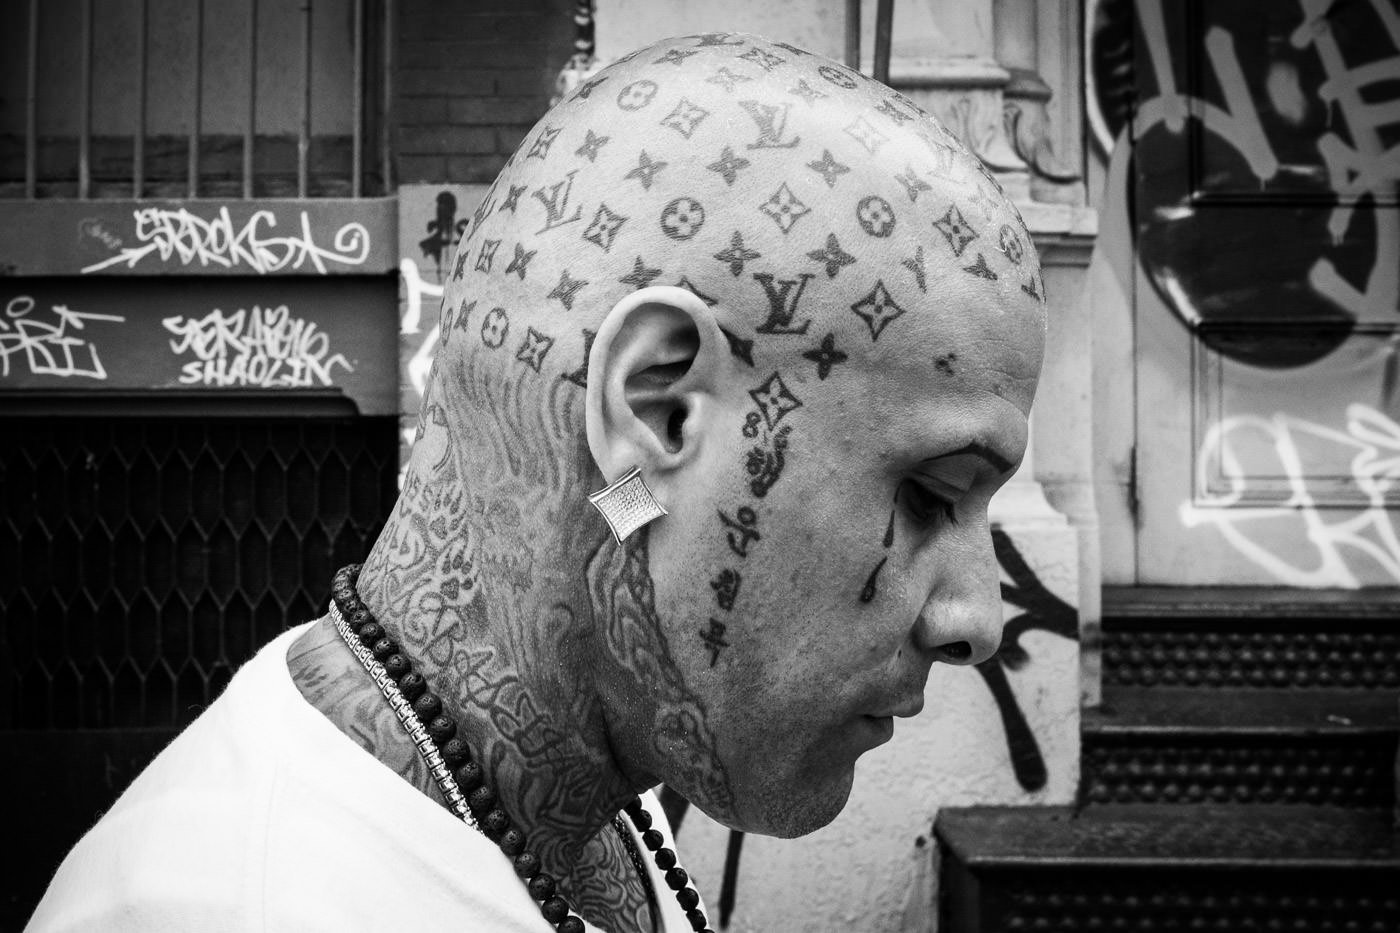 Уличная фотография: портрет мужчины в профиль, демонстрирующий замысловатые татуировки на голове